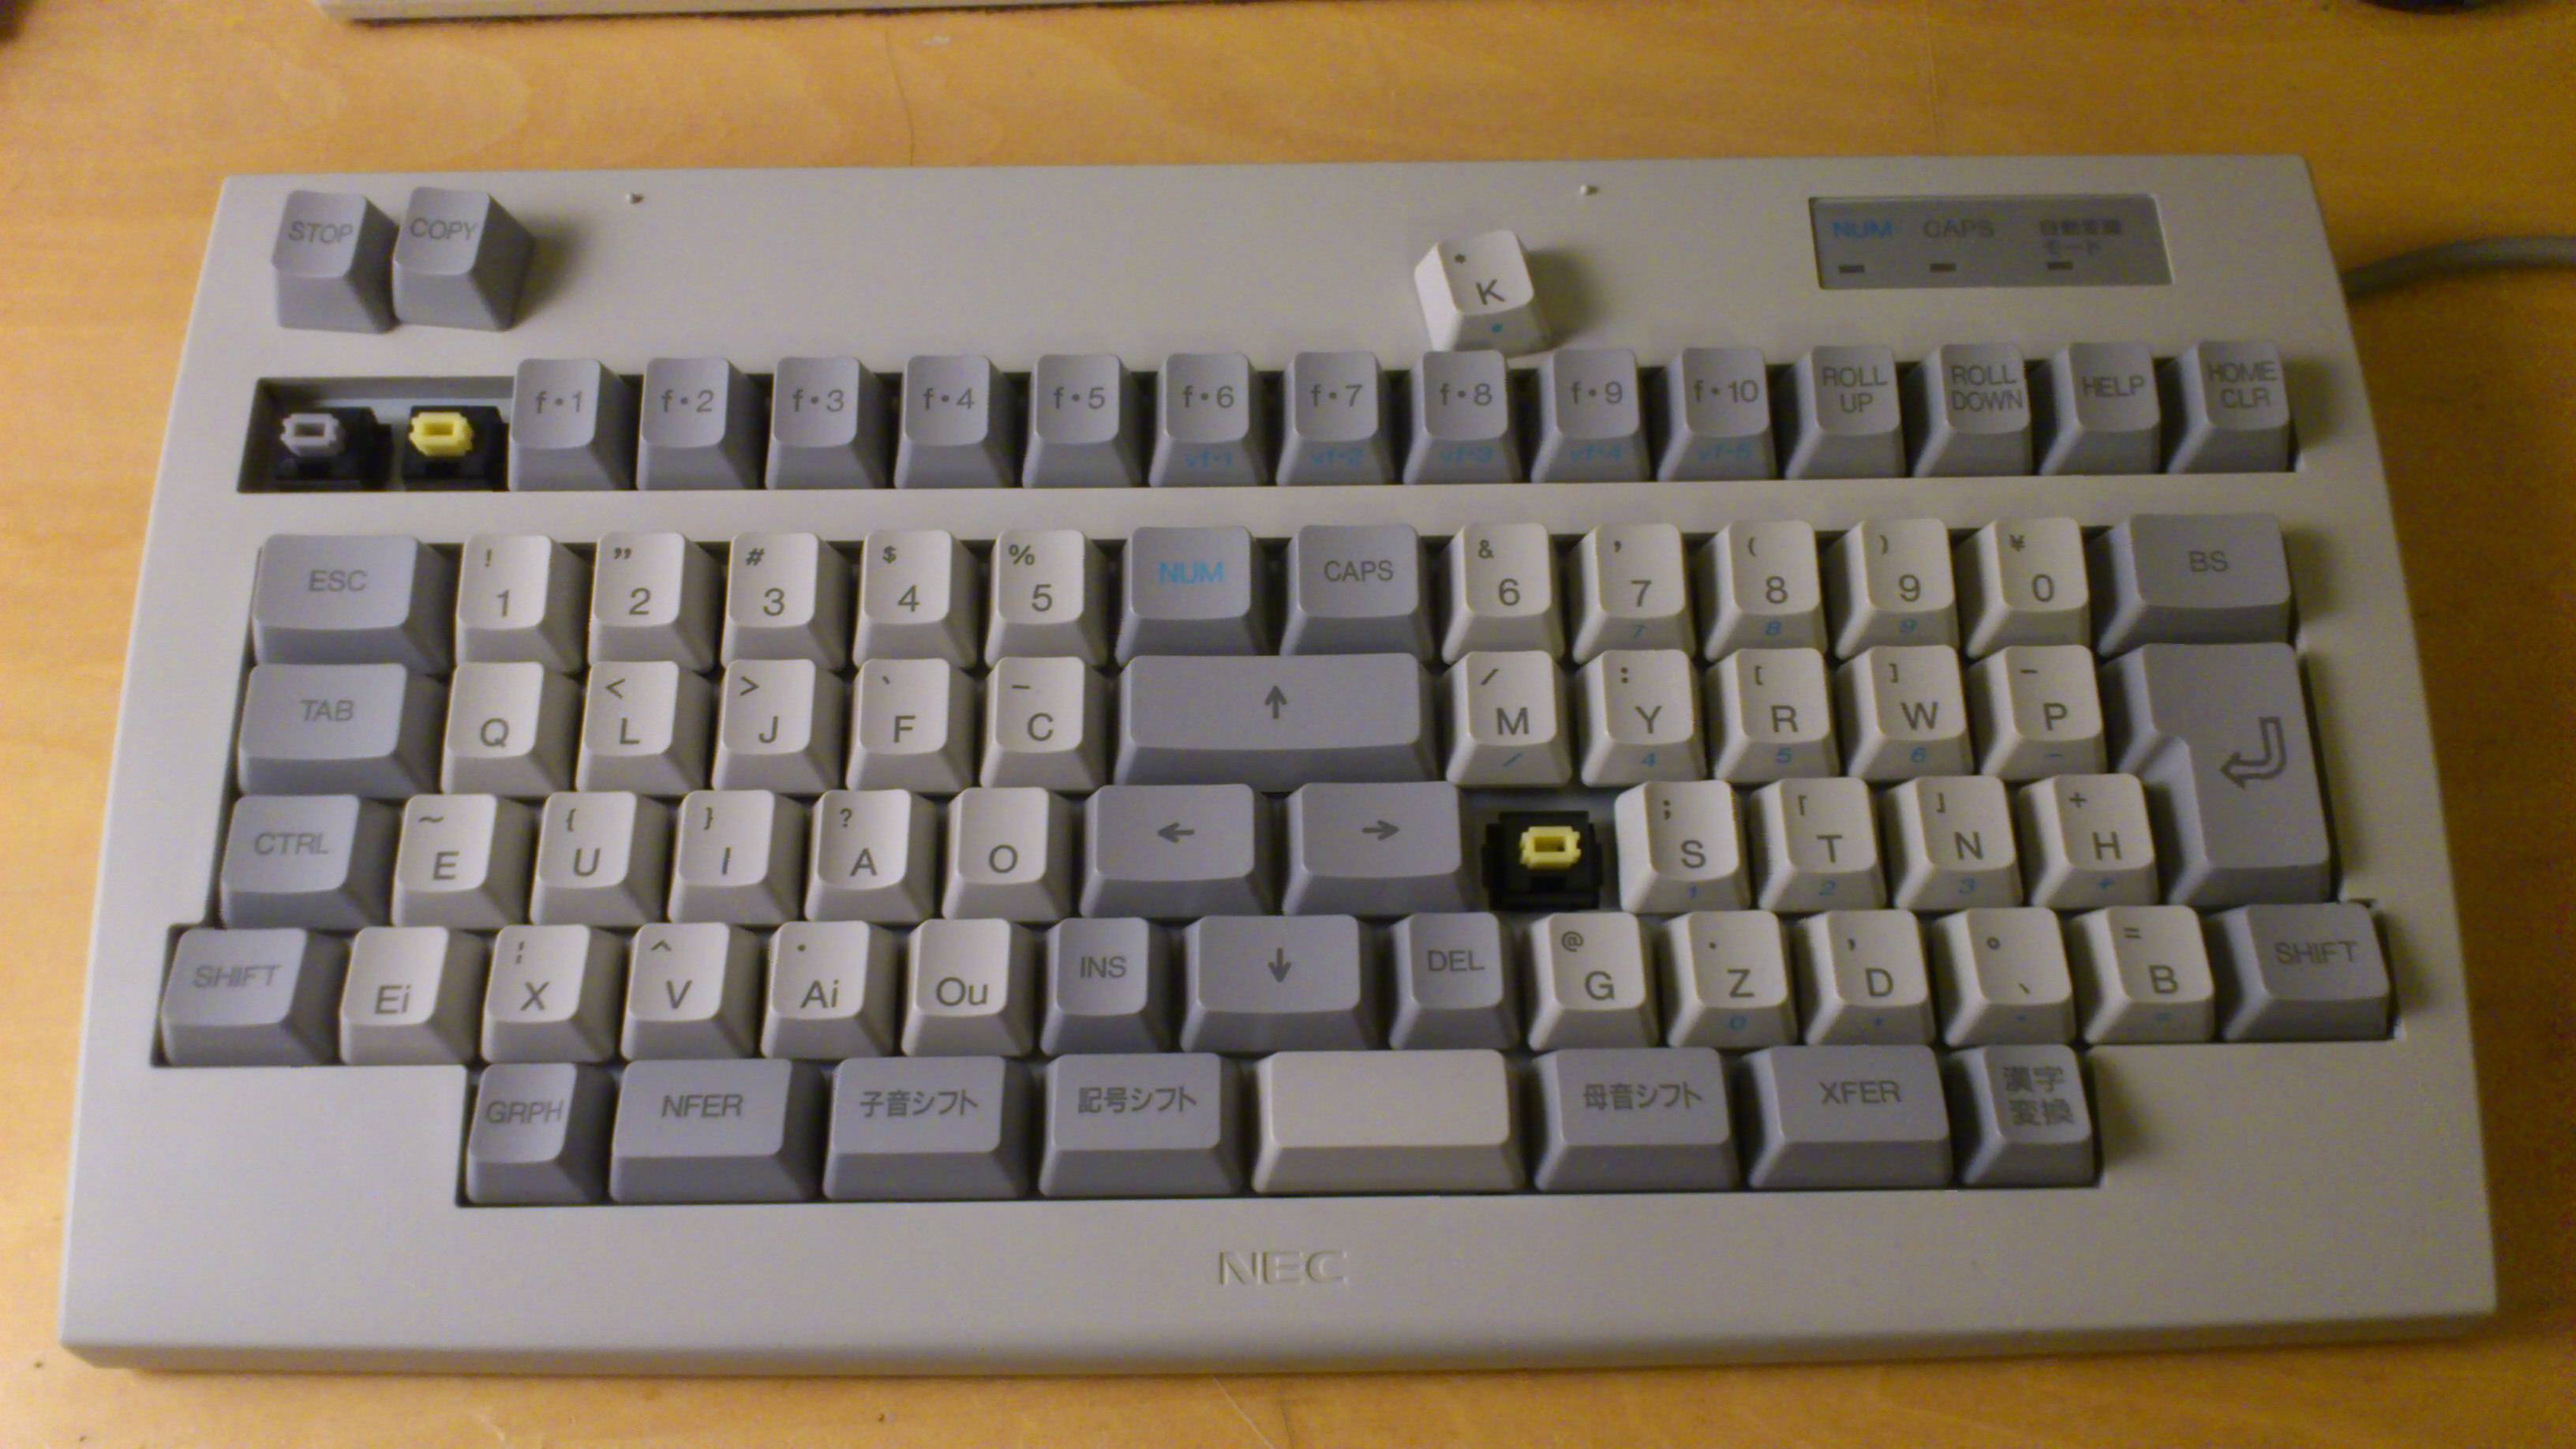 NEC M shiki keyboard NEC PC98 1992